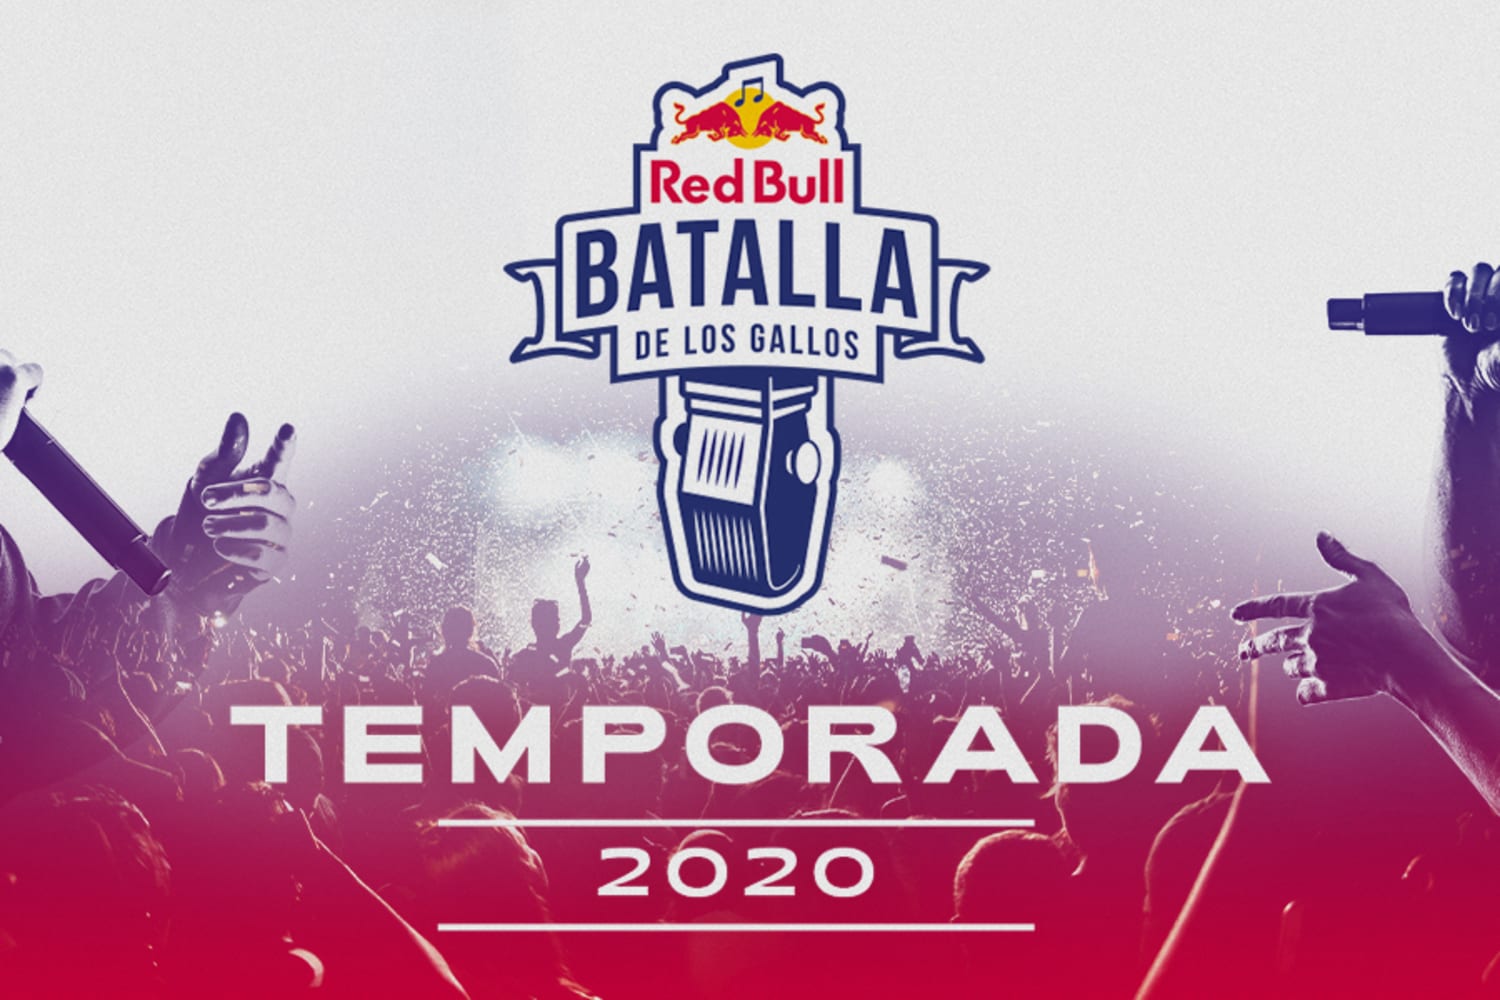 Vuelve Red Bull Batalla de los Gallos fechas de 2020